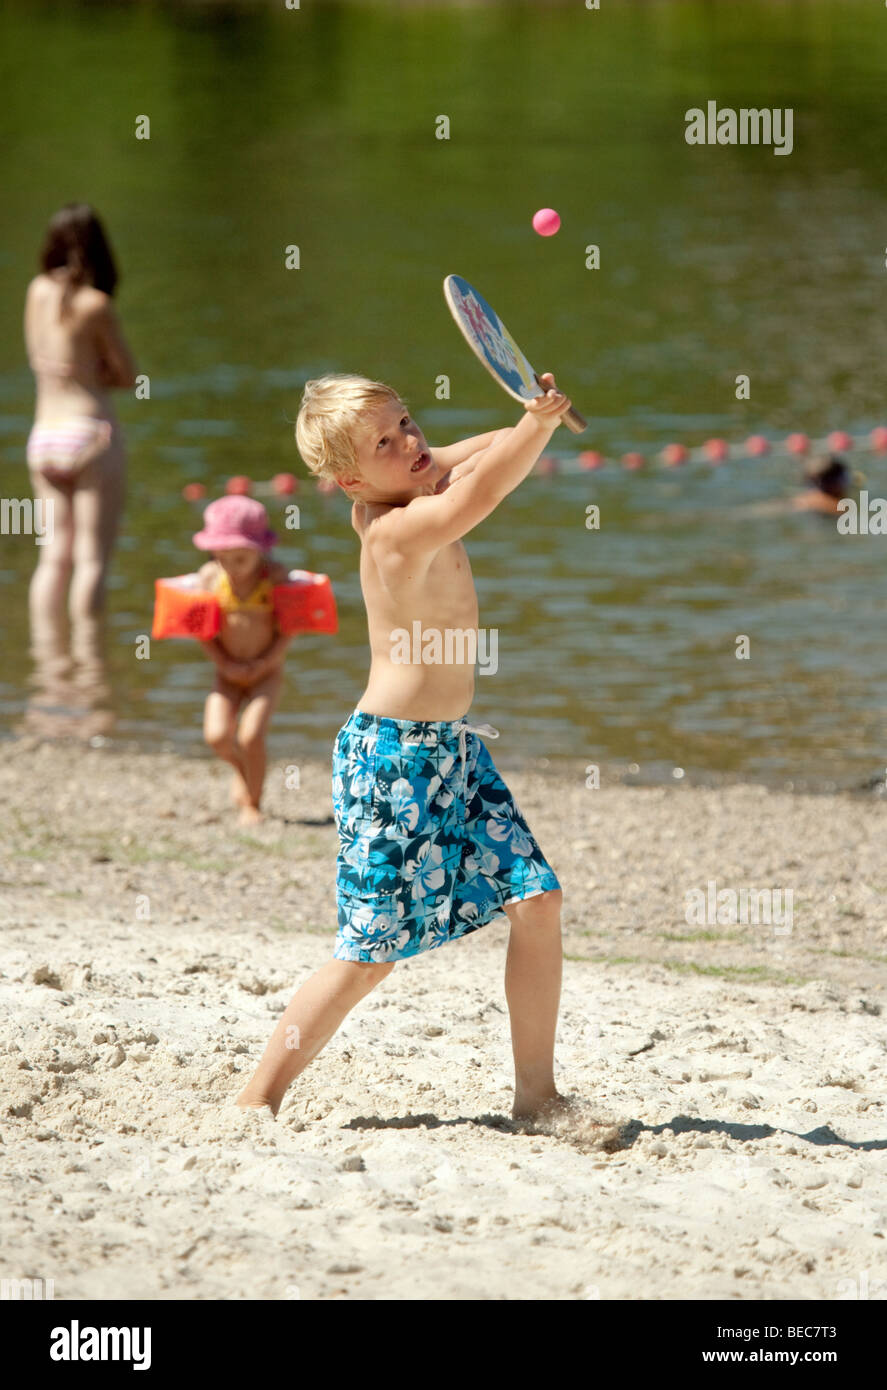 Un jeune garçon à la pratique du beach tennis, la rivière Lot à Castelmoron-sur-Lot, Aquitaine France Banque D'Images